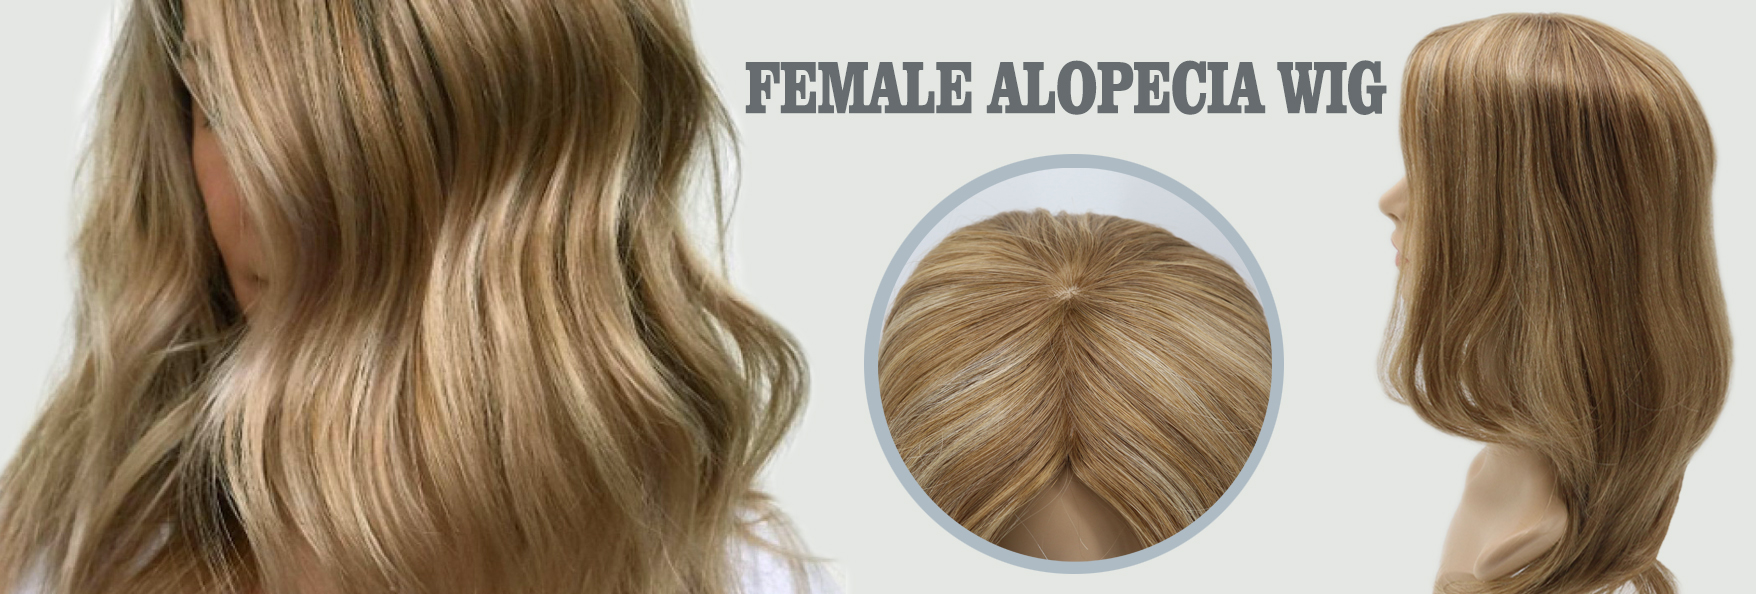 Female Alopecia Wig